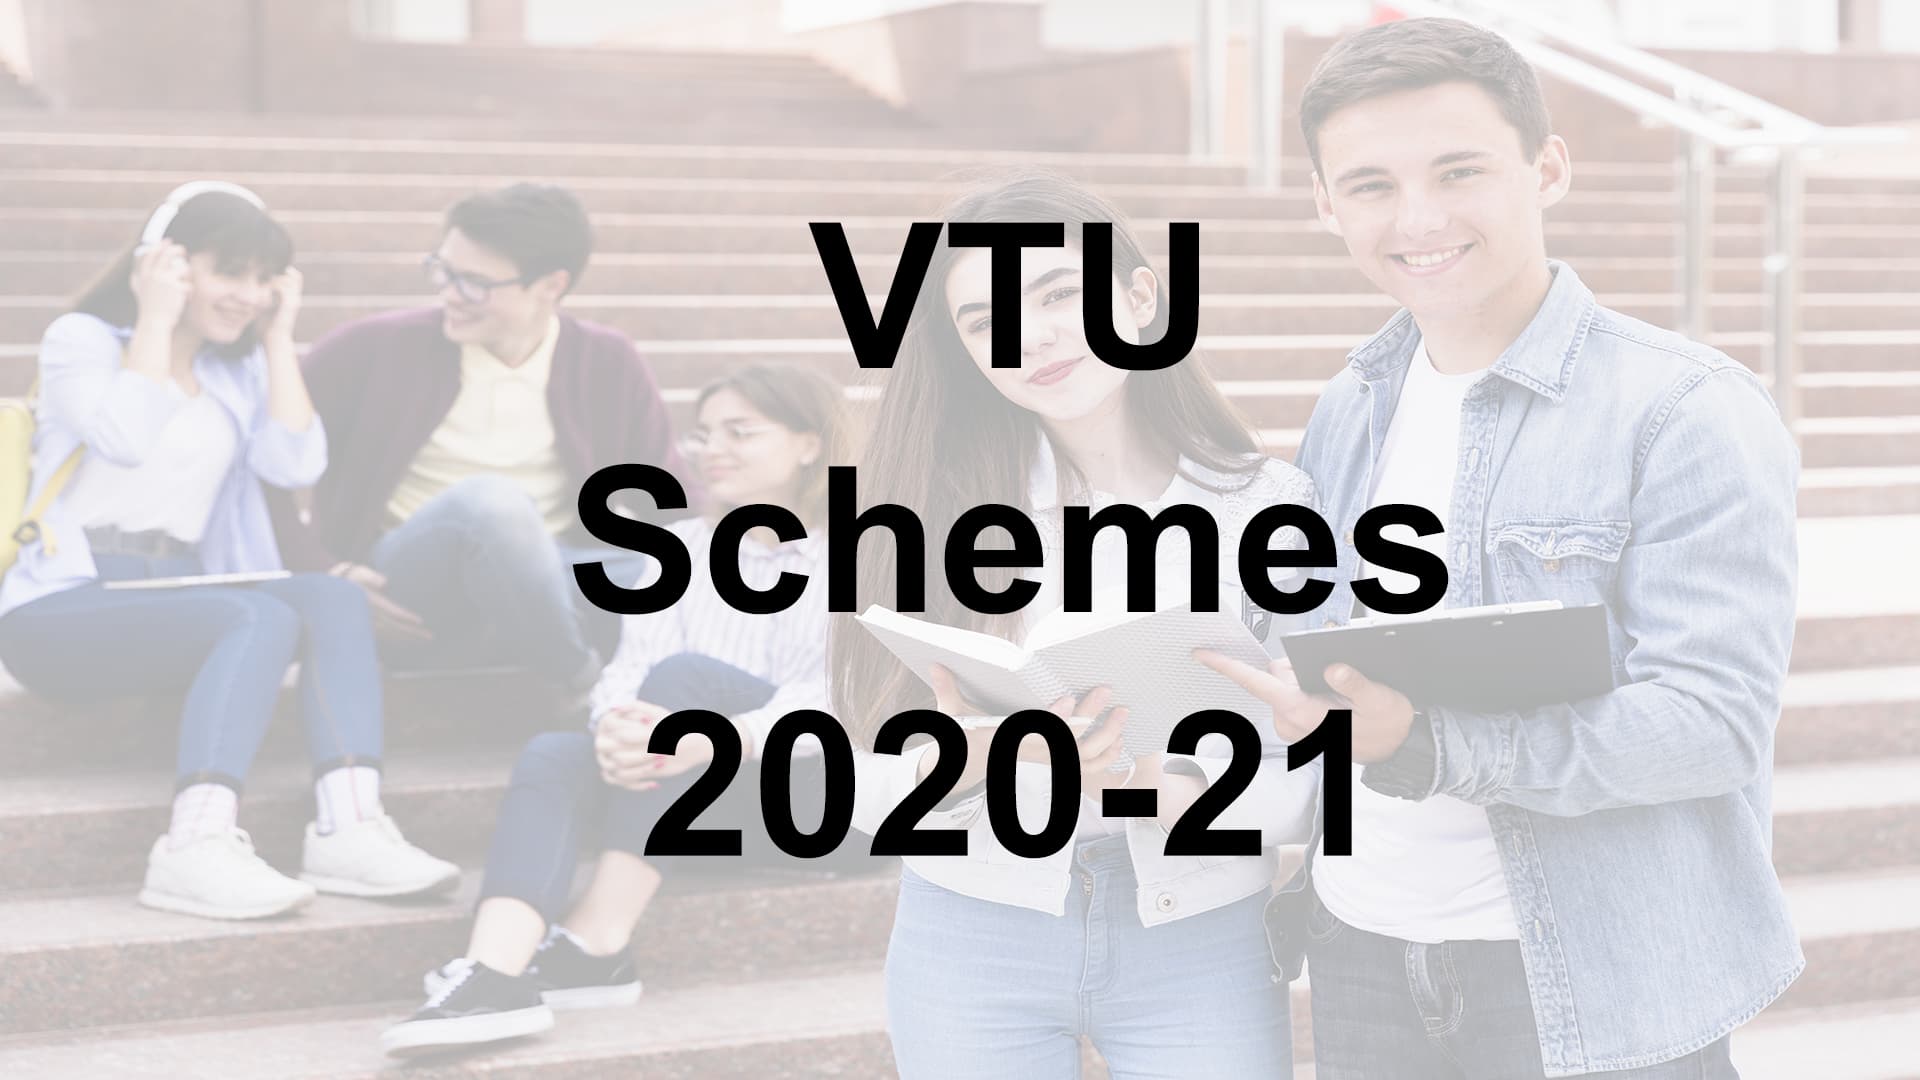 VTU Schemes 2020-21